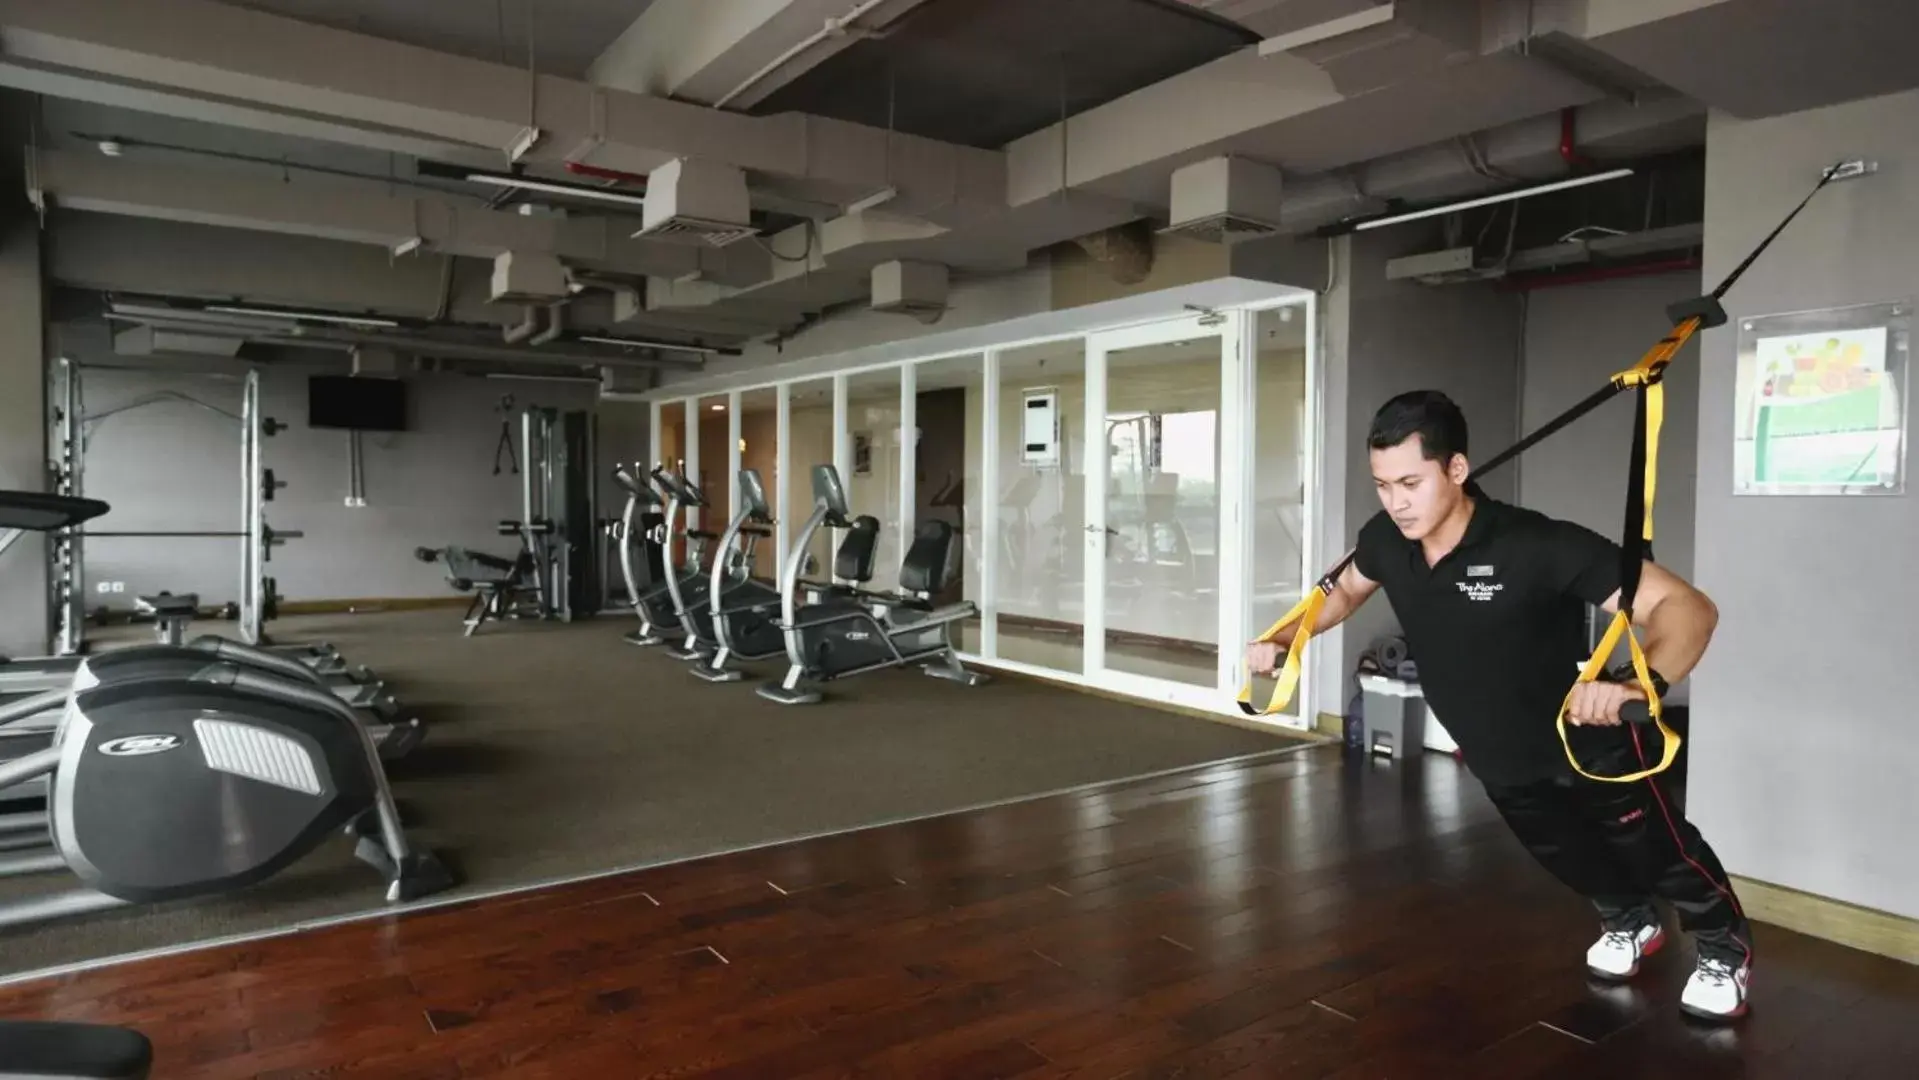 Fitness centre/facilities in The Alana Surabaya